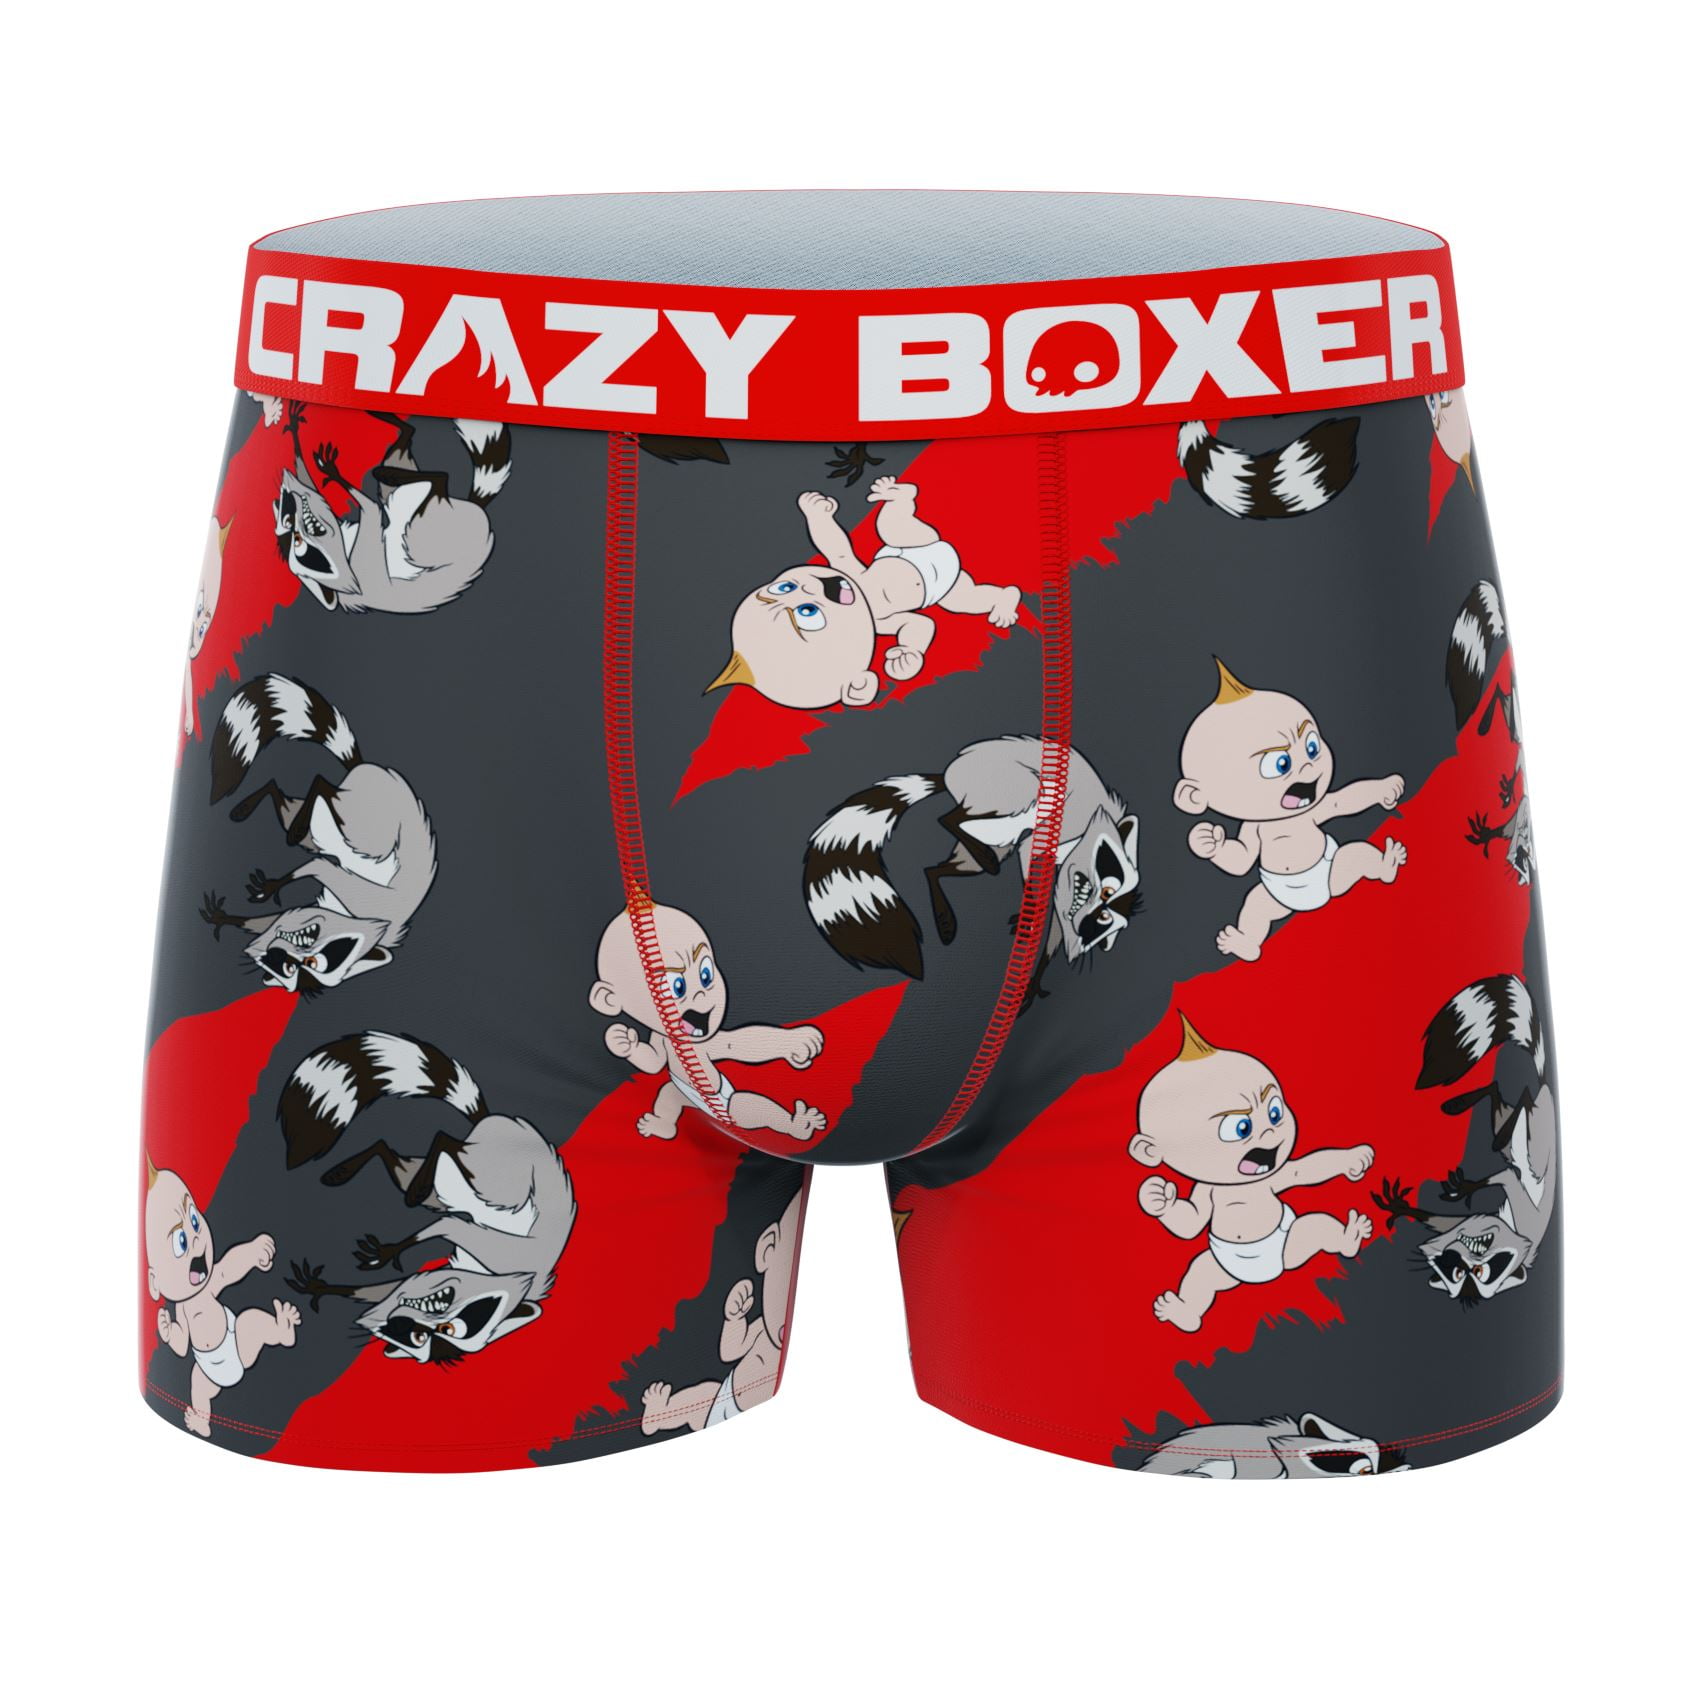 CRAZYBOXER Men's Underwear Star Wars Comfortable Soft Boxer Brief  Lightweight 